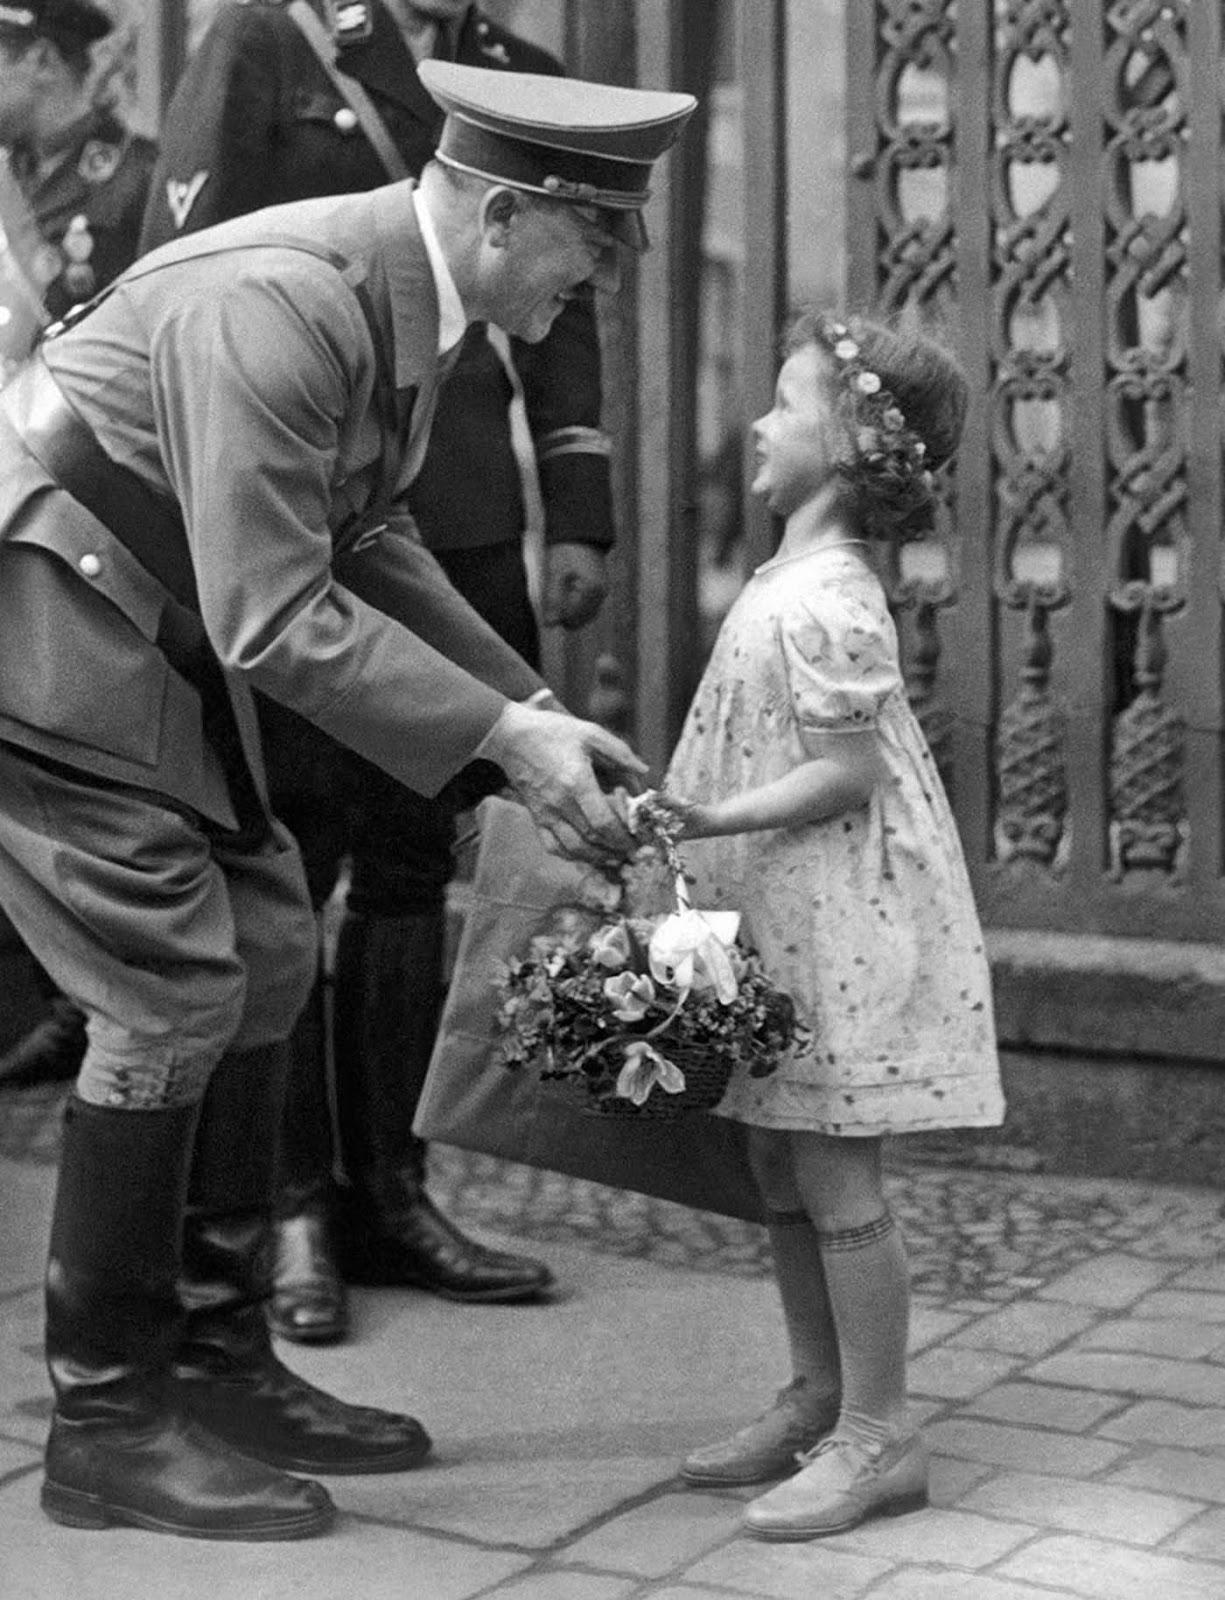 صورة لأدولف هتلر وهو يمازح هيلجا جوبلز